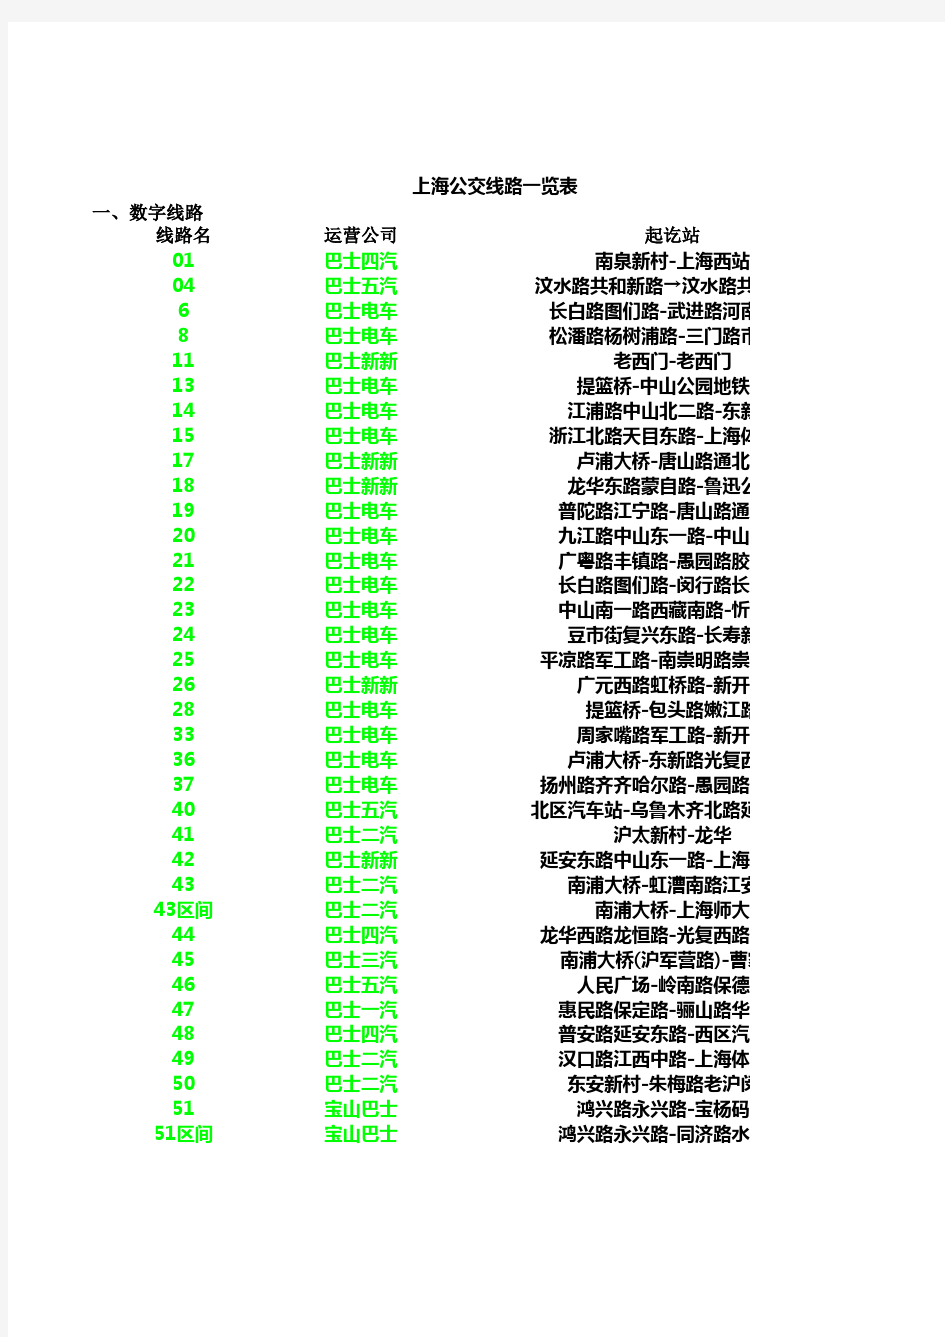 上海公交线路一览表(截止2012年12月)